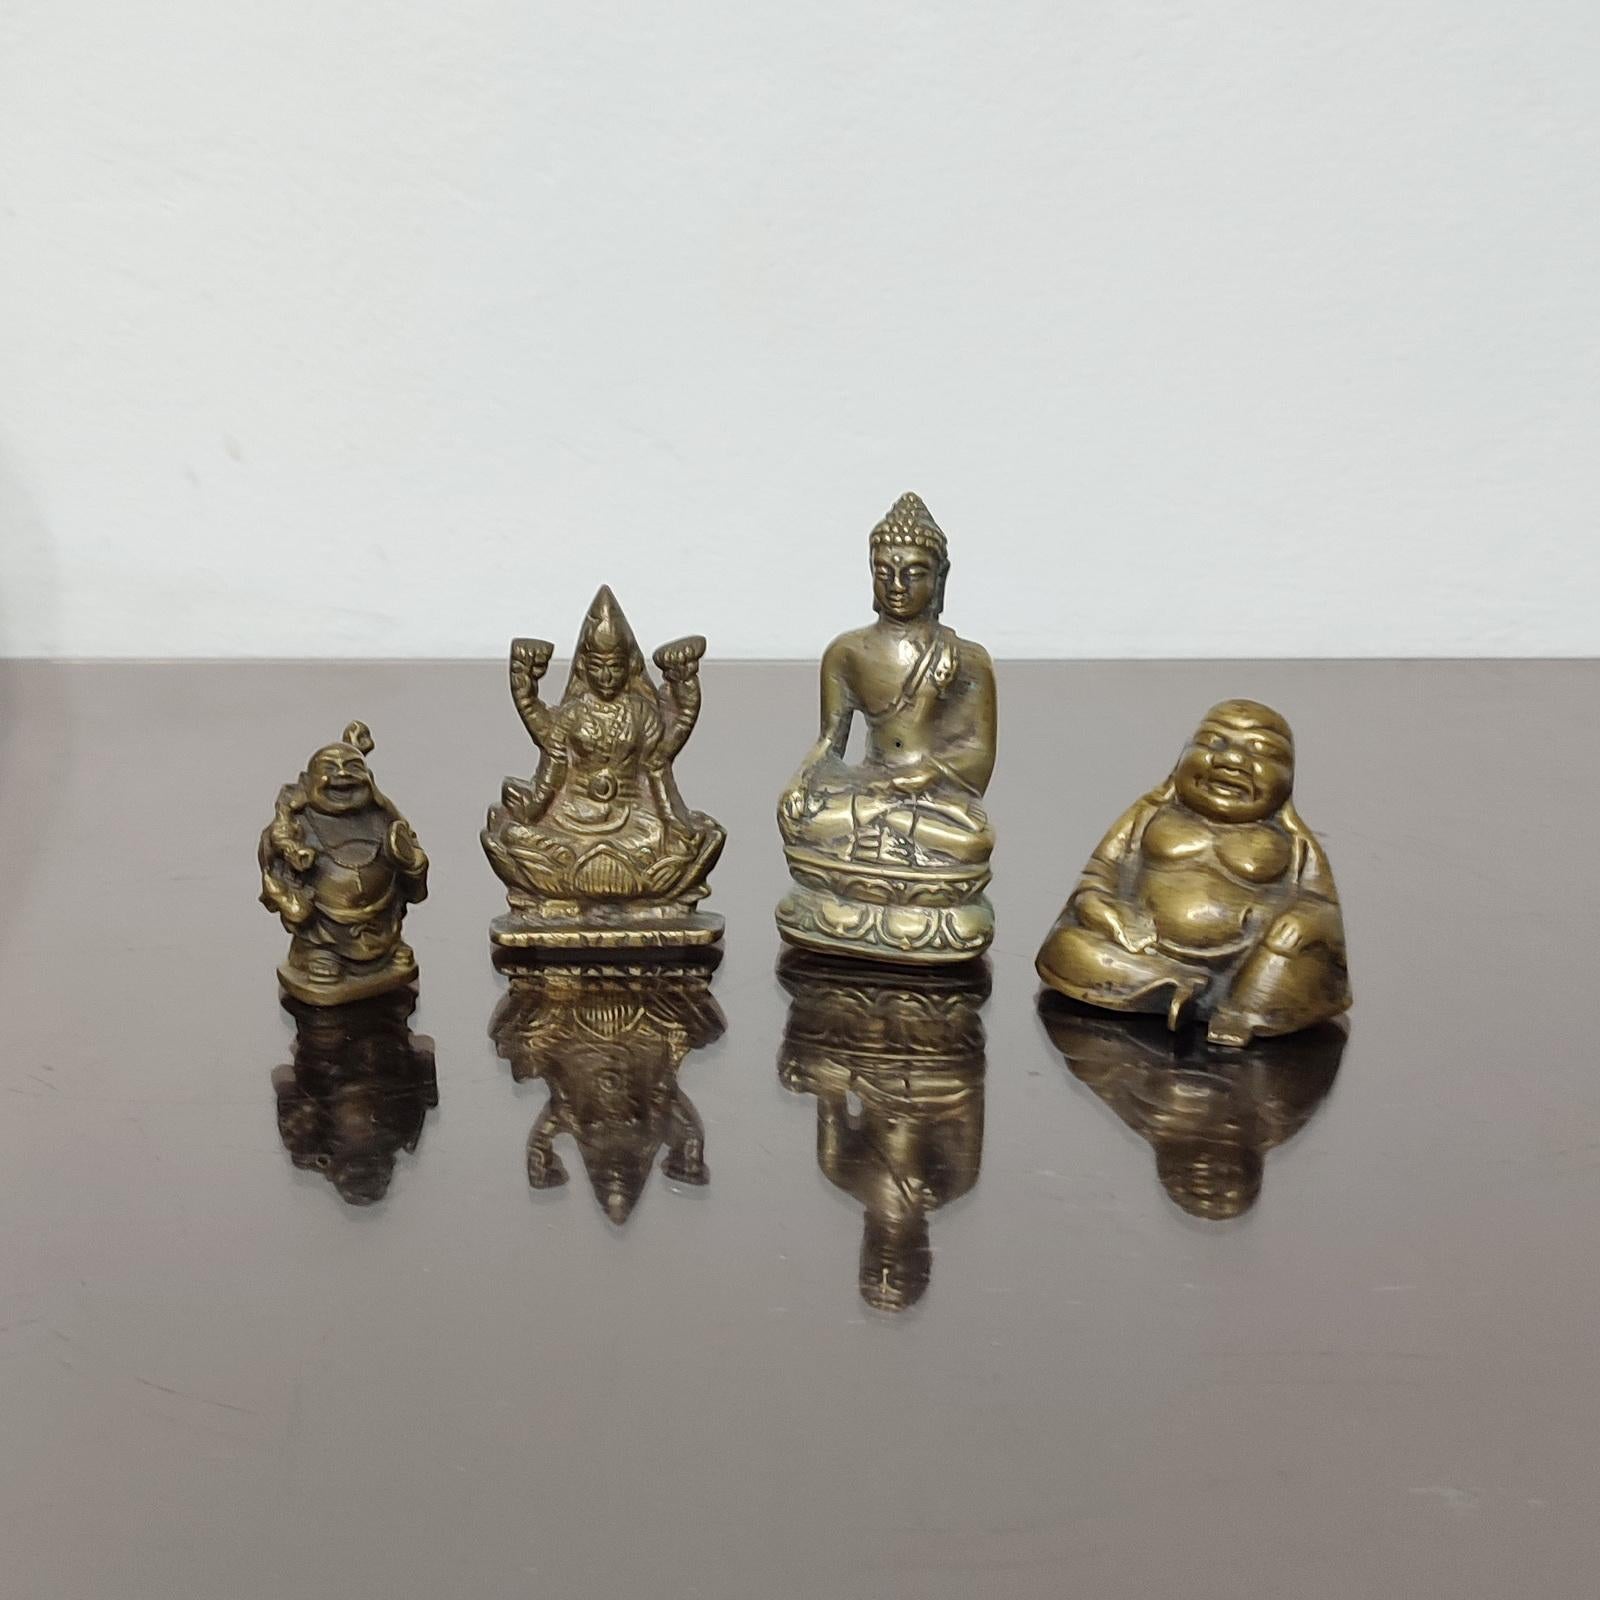 Eine schöne Sammlung von vier Miniaturskulpturen, die asiatische Götter und Buddha darstellen. Zustand Vintage By.
Abmessungen: Höhe von 5 bis 9 cm.